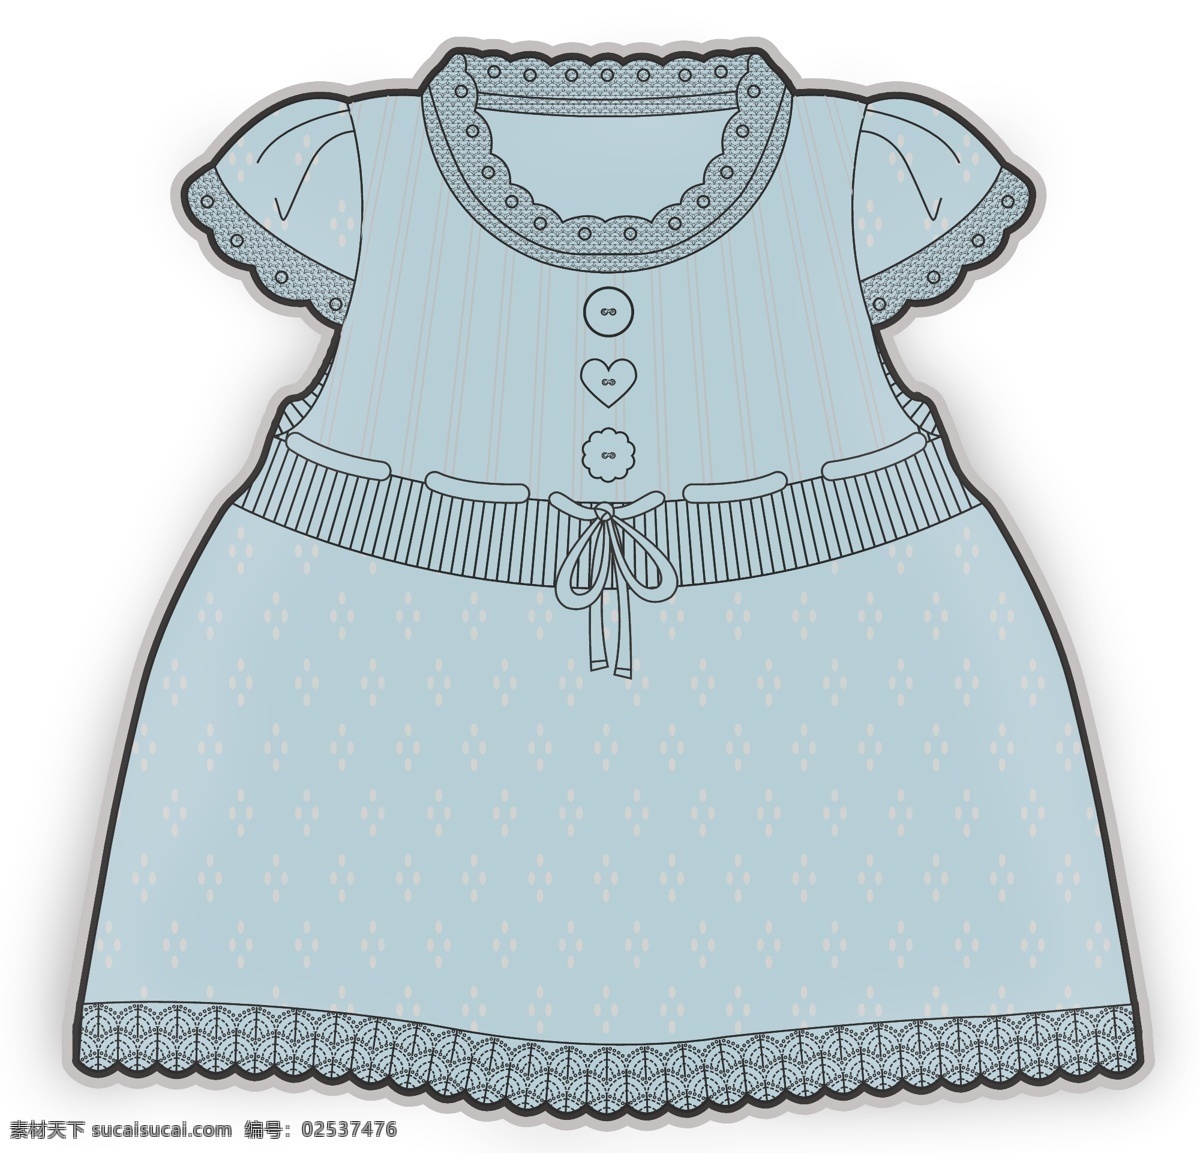 蓝色 公主 裙 彩色 服装设计 原稿 矢量 绑带 儿童服装设计 可爱 手绘 保暖 线条 源文件